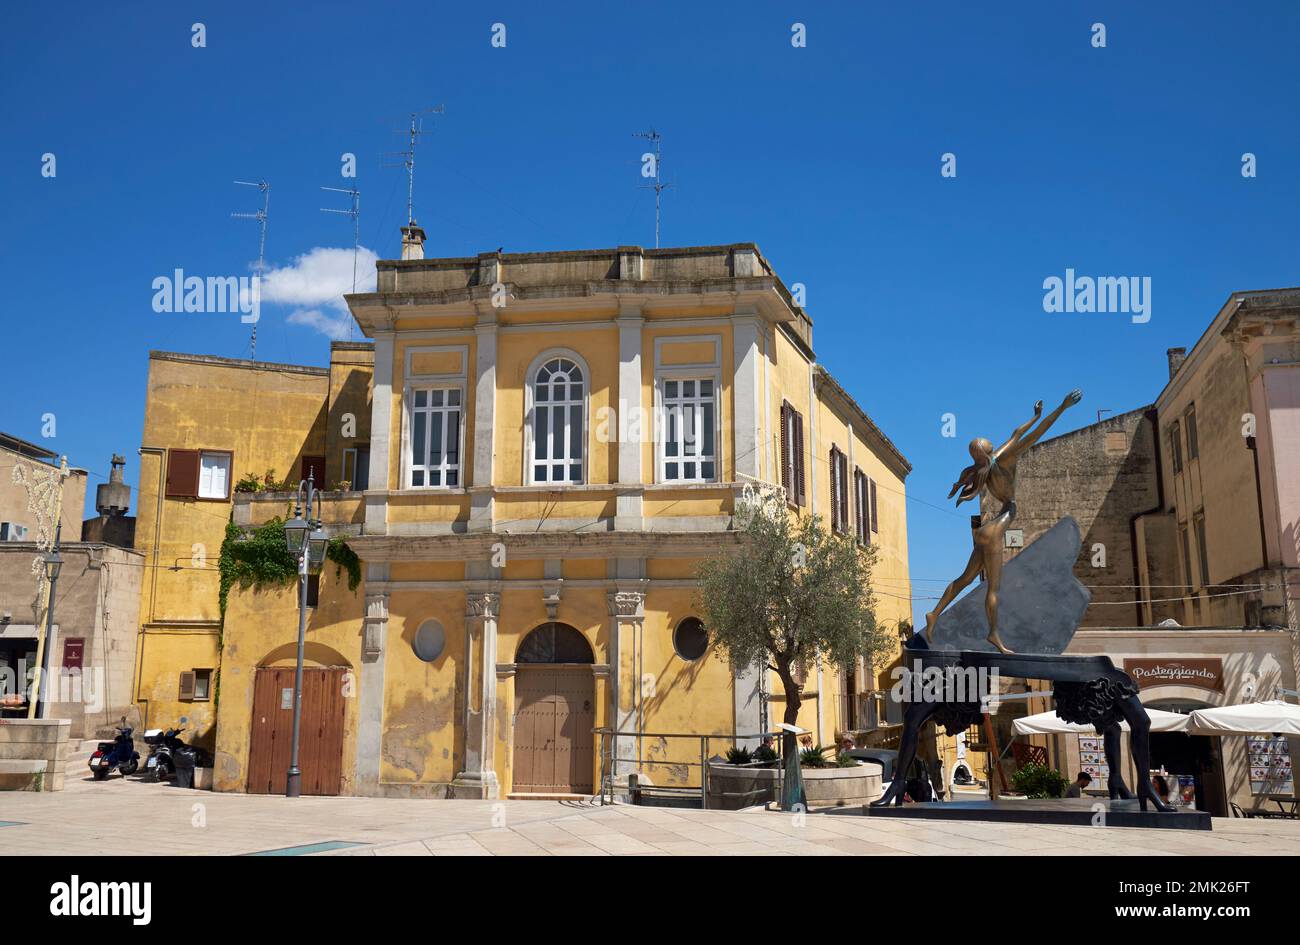 Piazza Francesco d'Assis, Matera, Basilicate, Italie, avec une sculpture en bronze du 'Piano surréaliste' de Salvador Dali à droite. Banque D'Images